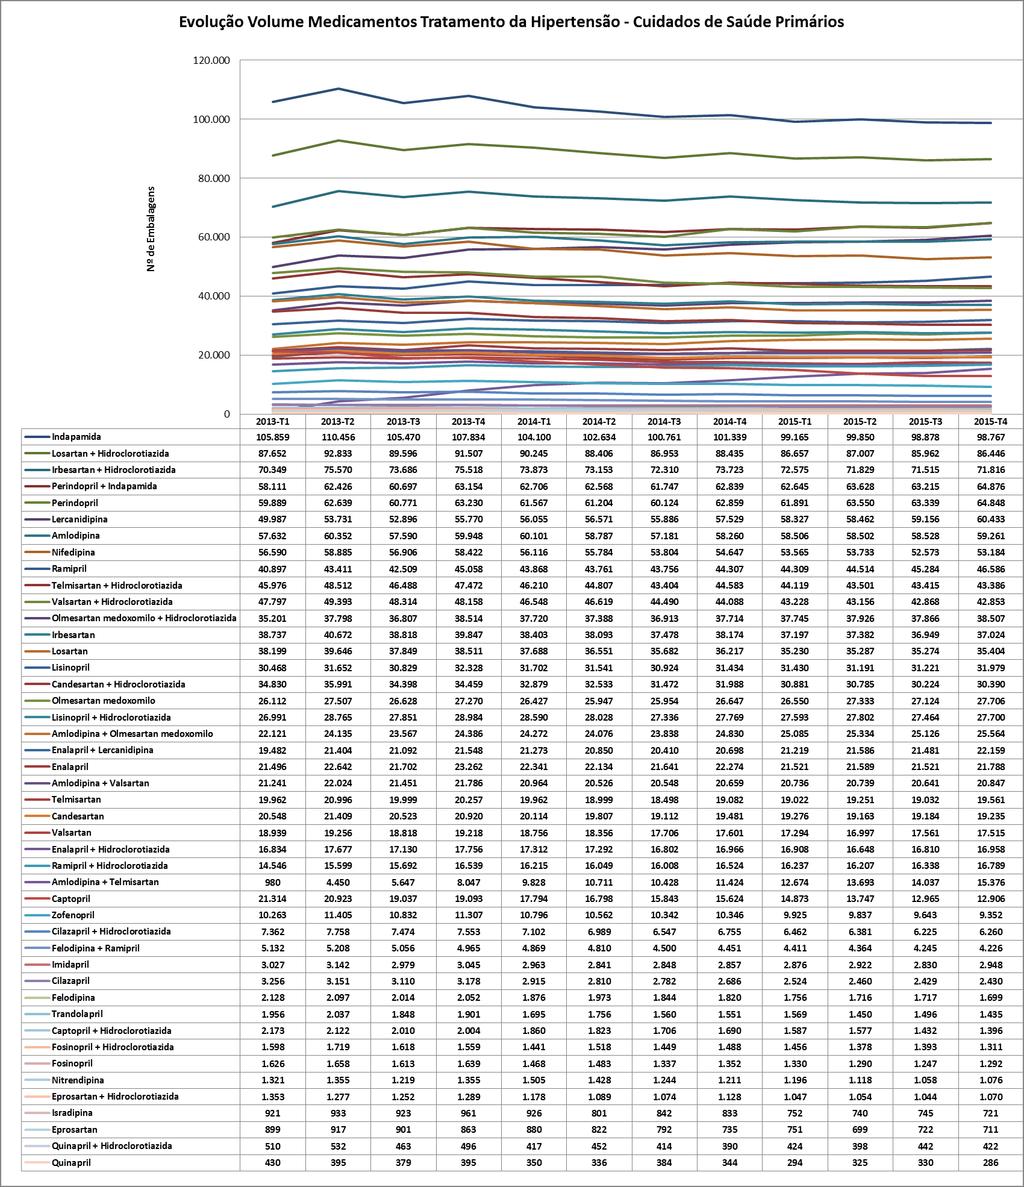 5.8.1 Monitorização Gráfico 58: Evolução mensal do número de embalagens de antihipertensores nos CSP